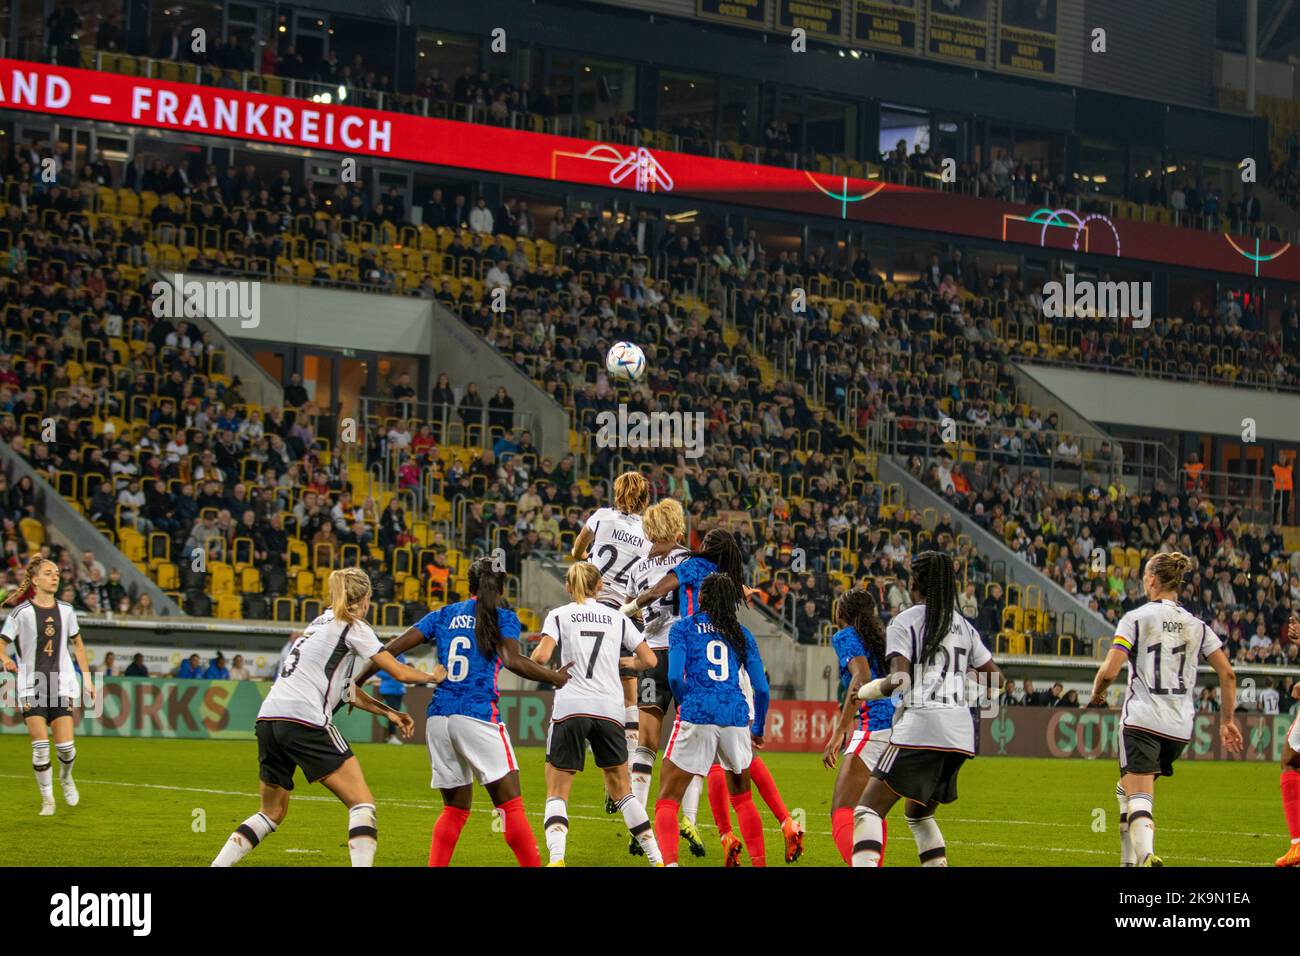 Image pendant le match - TTestspiel der DFB-Frauen Nationalelf im Rudolf-Harbig-Staden Dresden gegen Frankfreich, Wiederauflage des WEURO22 Halbfinales Banque D'Images